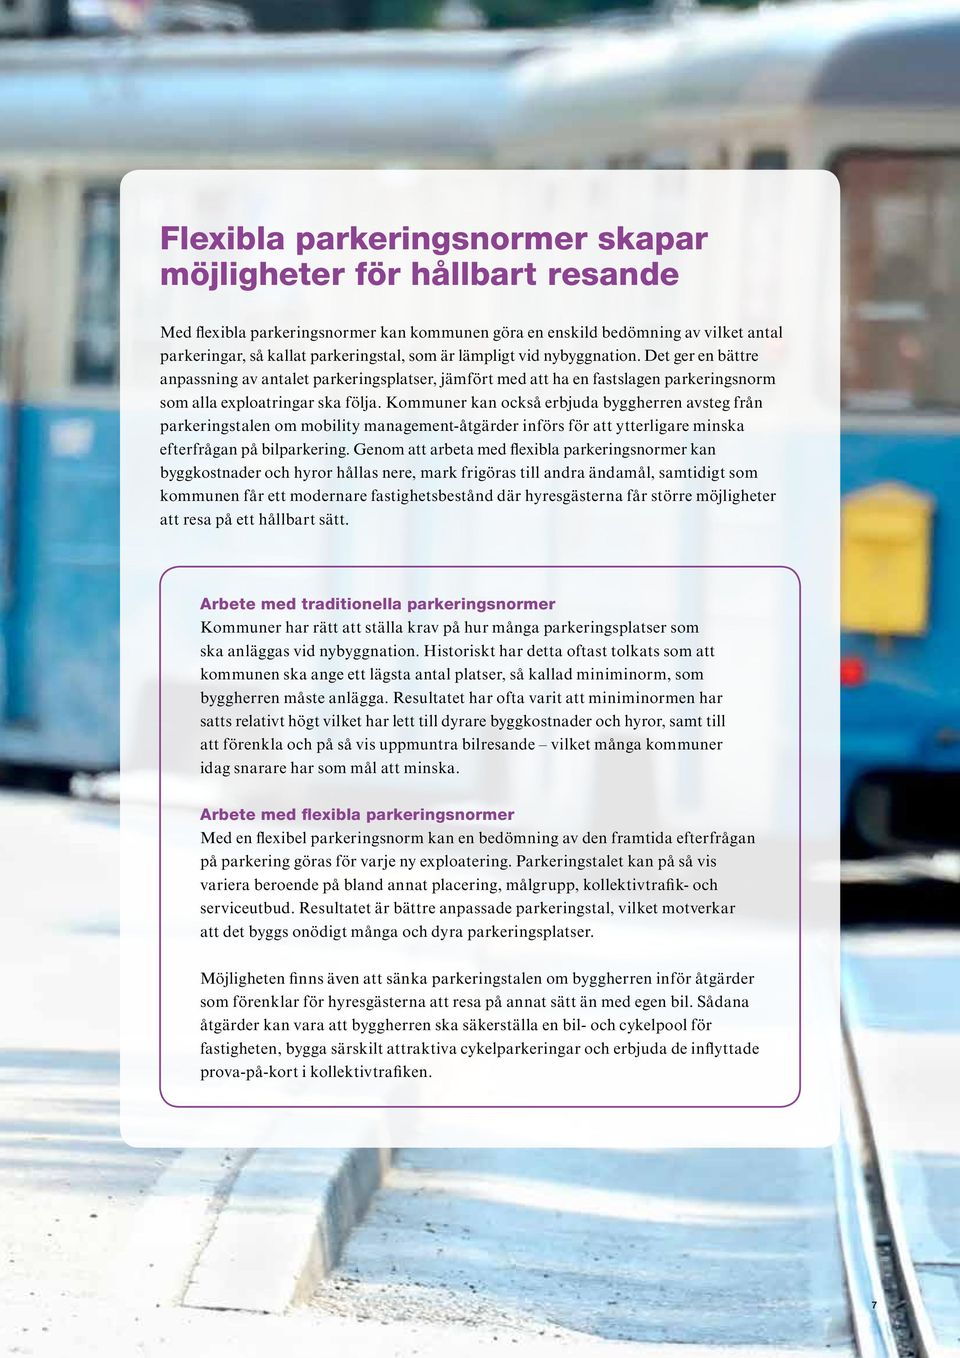 Kommuner kan också erbjuda byggherren avsteg från parkeringstalen om mobility management-åtgärder införs för att ytterligare minska efterfrågan på bilparkering.